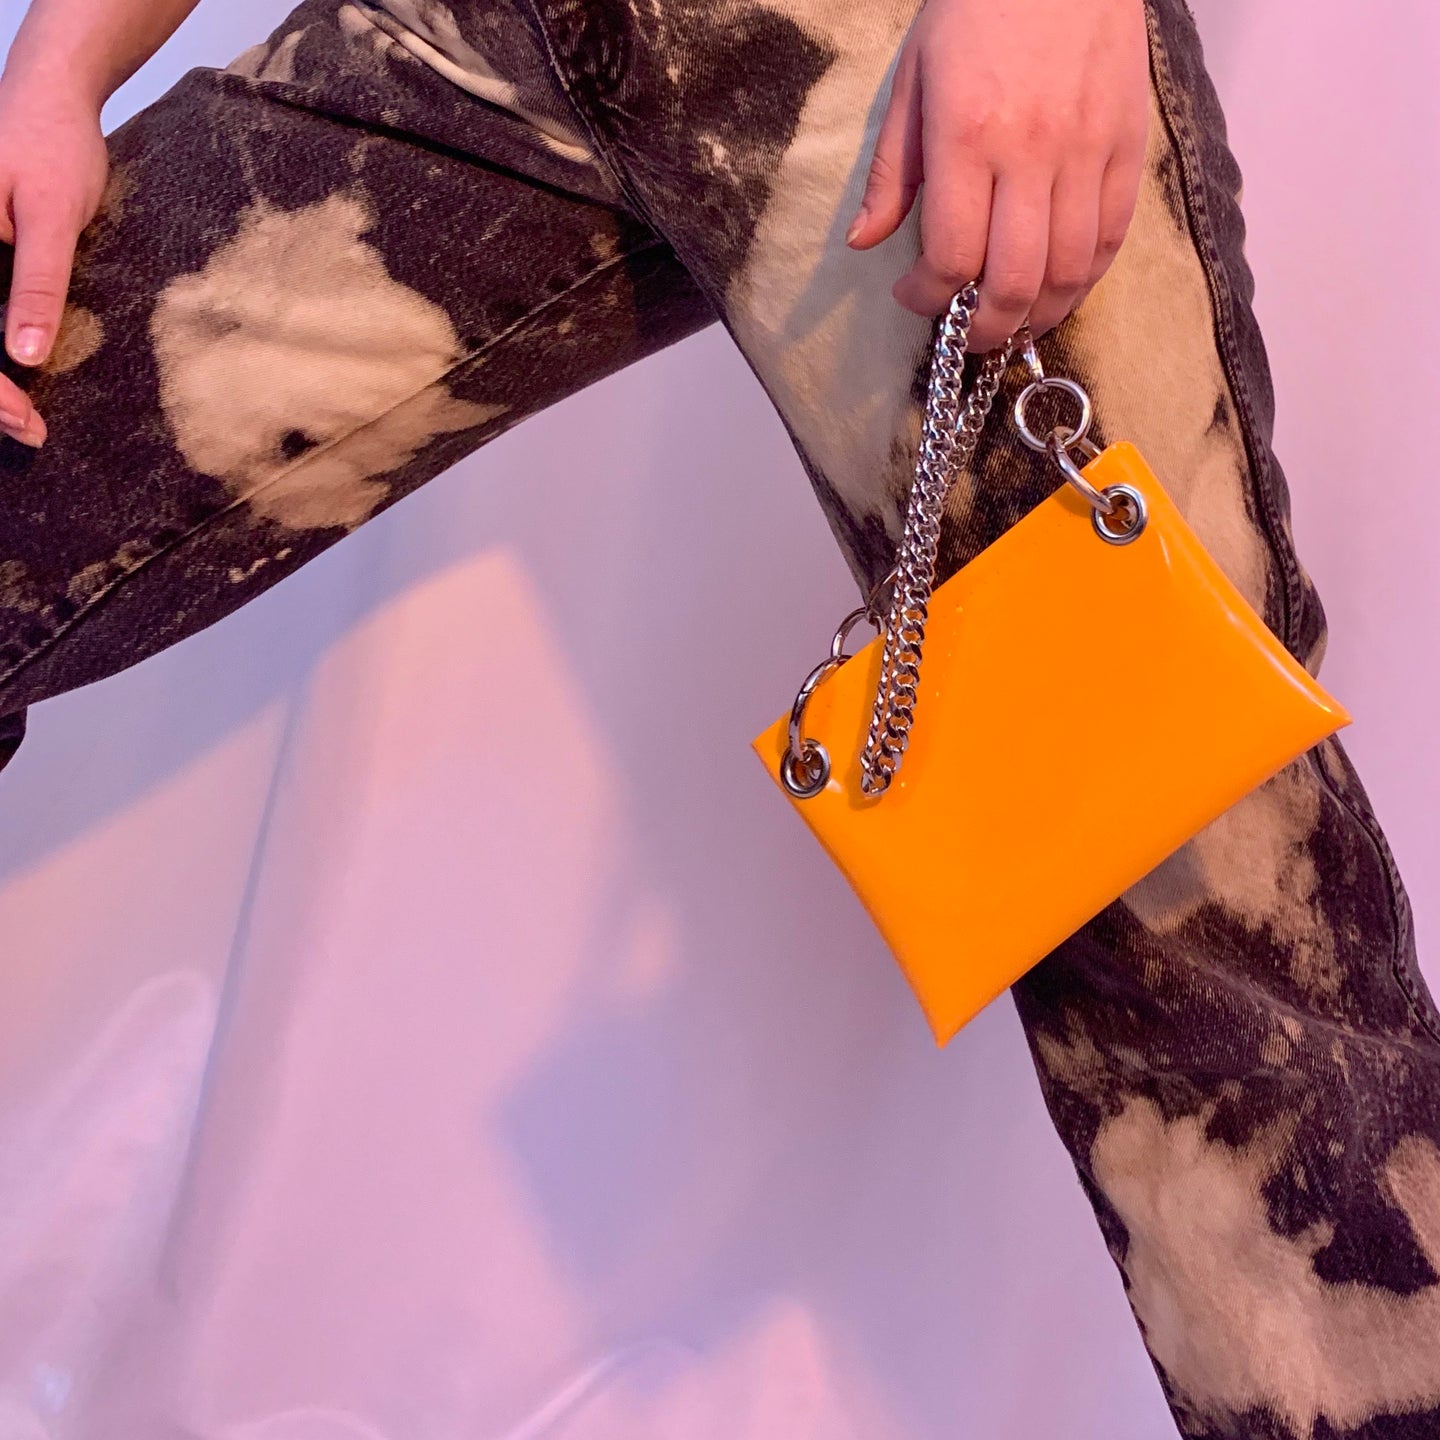 Neon orange belt bag